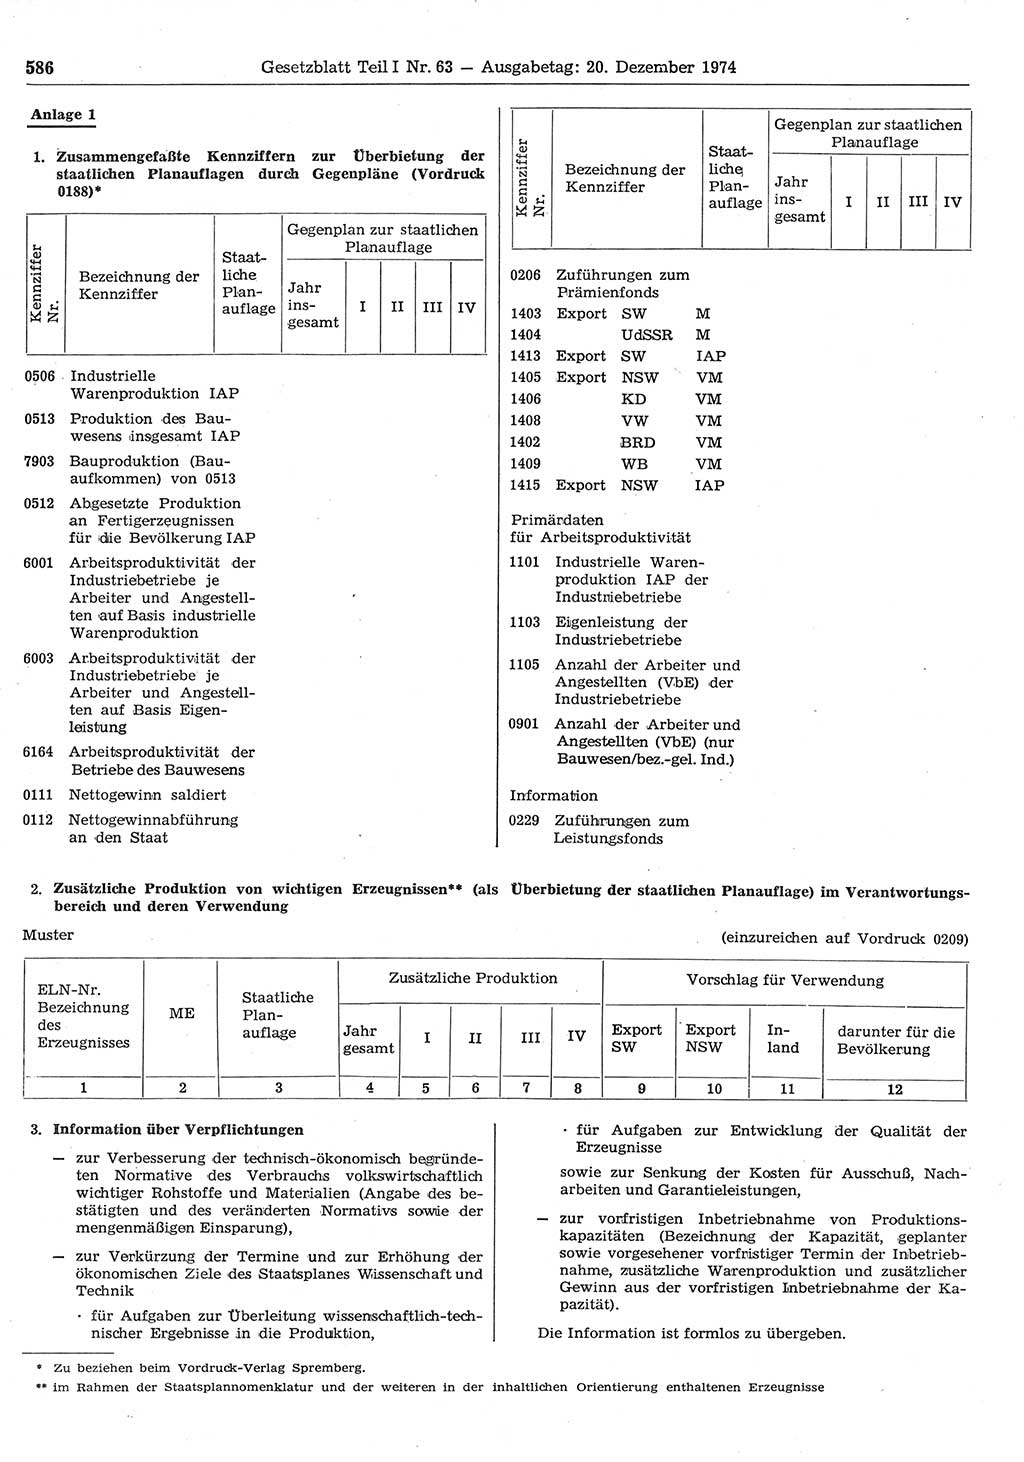 Gesetzblatt (GBl.) der Deutschen Demokratischen Republik (DDR) Teil Ⅰ 1974, Seite 586 (GBl. DDR Ⅰ 1974, S. 586)